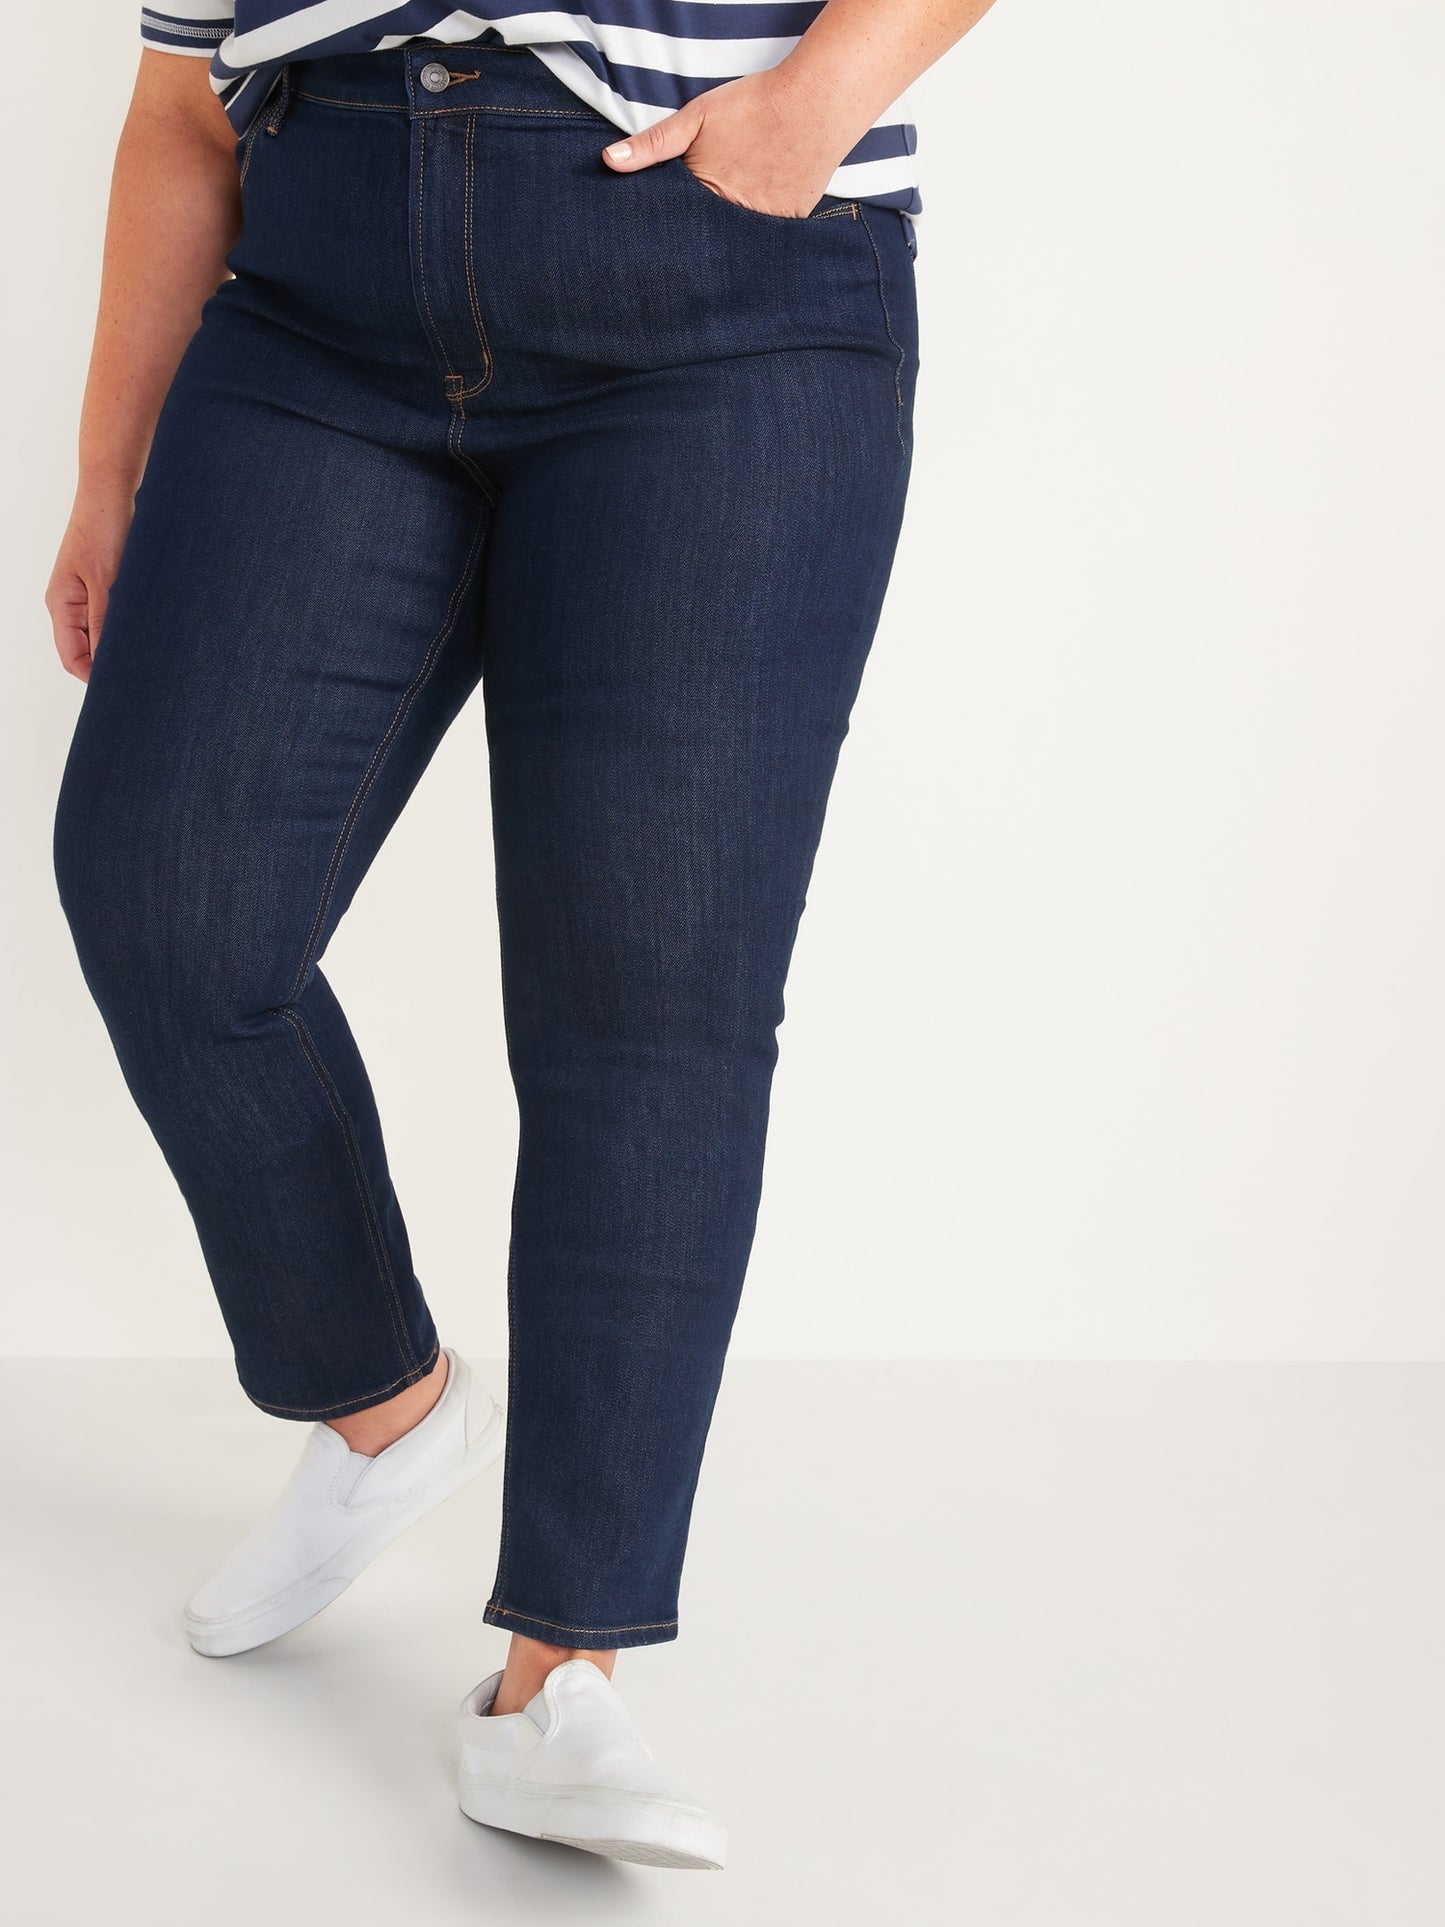 Jeans Wow rectos de talle alto para mujeres